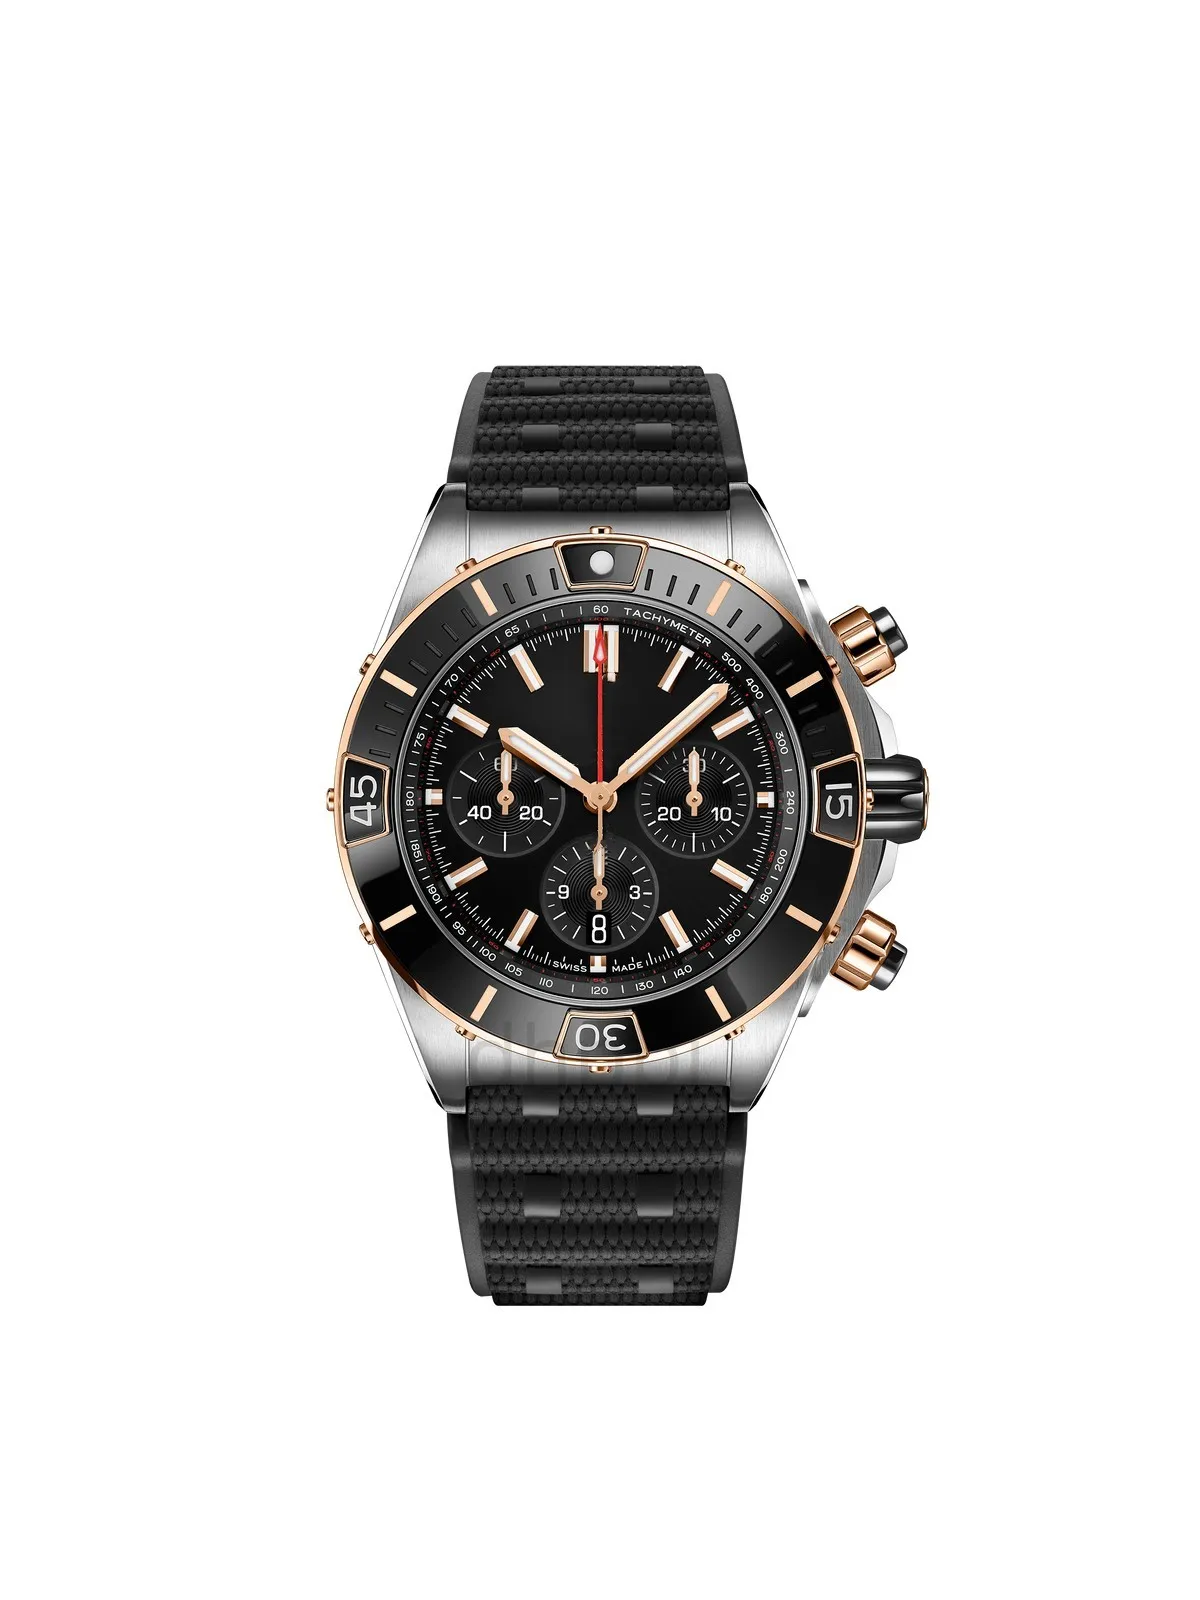 Мужские часы Автоматические механические часы Дизайнерские часы 44-миллиметровые часы vesace shock модные деловые часы мужские высококачественные брендовые часы Часы Montre De Luxe ice out uhr